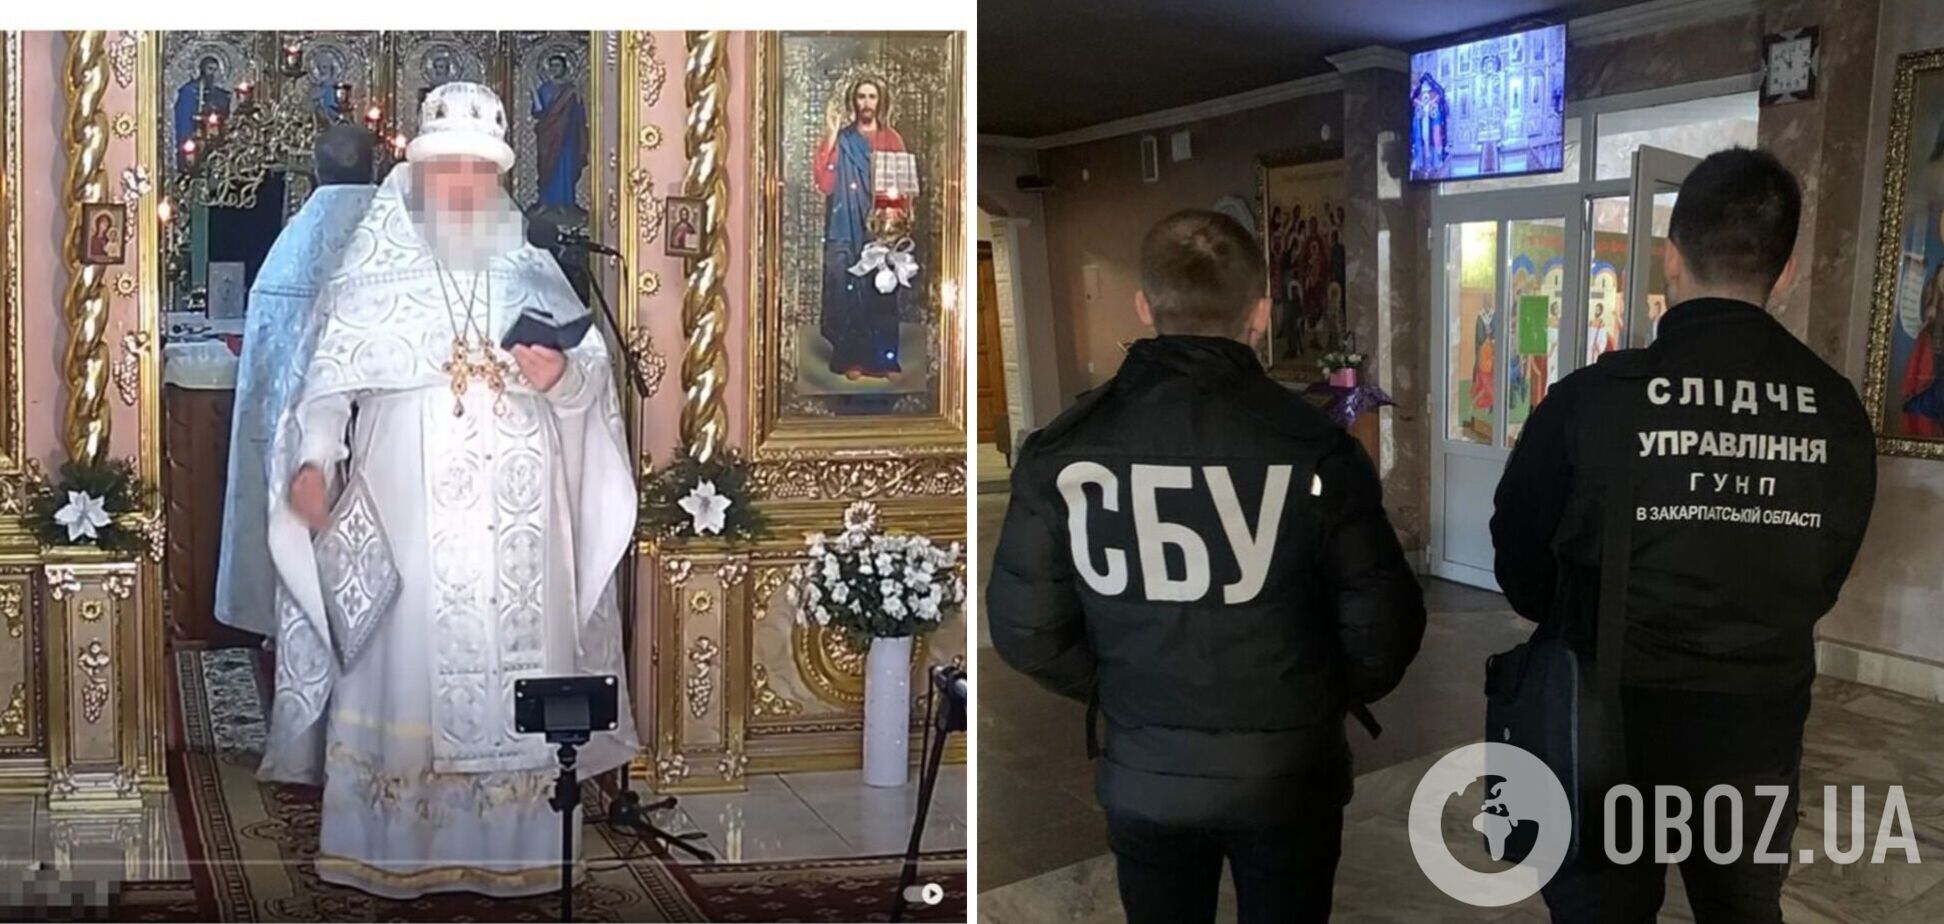 СБУ сообщила о подозрении настоятелю храма УПЦ МП на Закарпатье, разжигавшему религиозную рознь